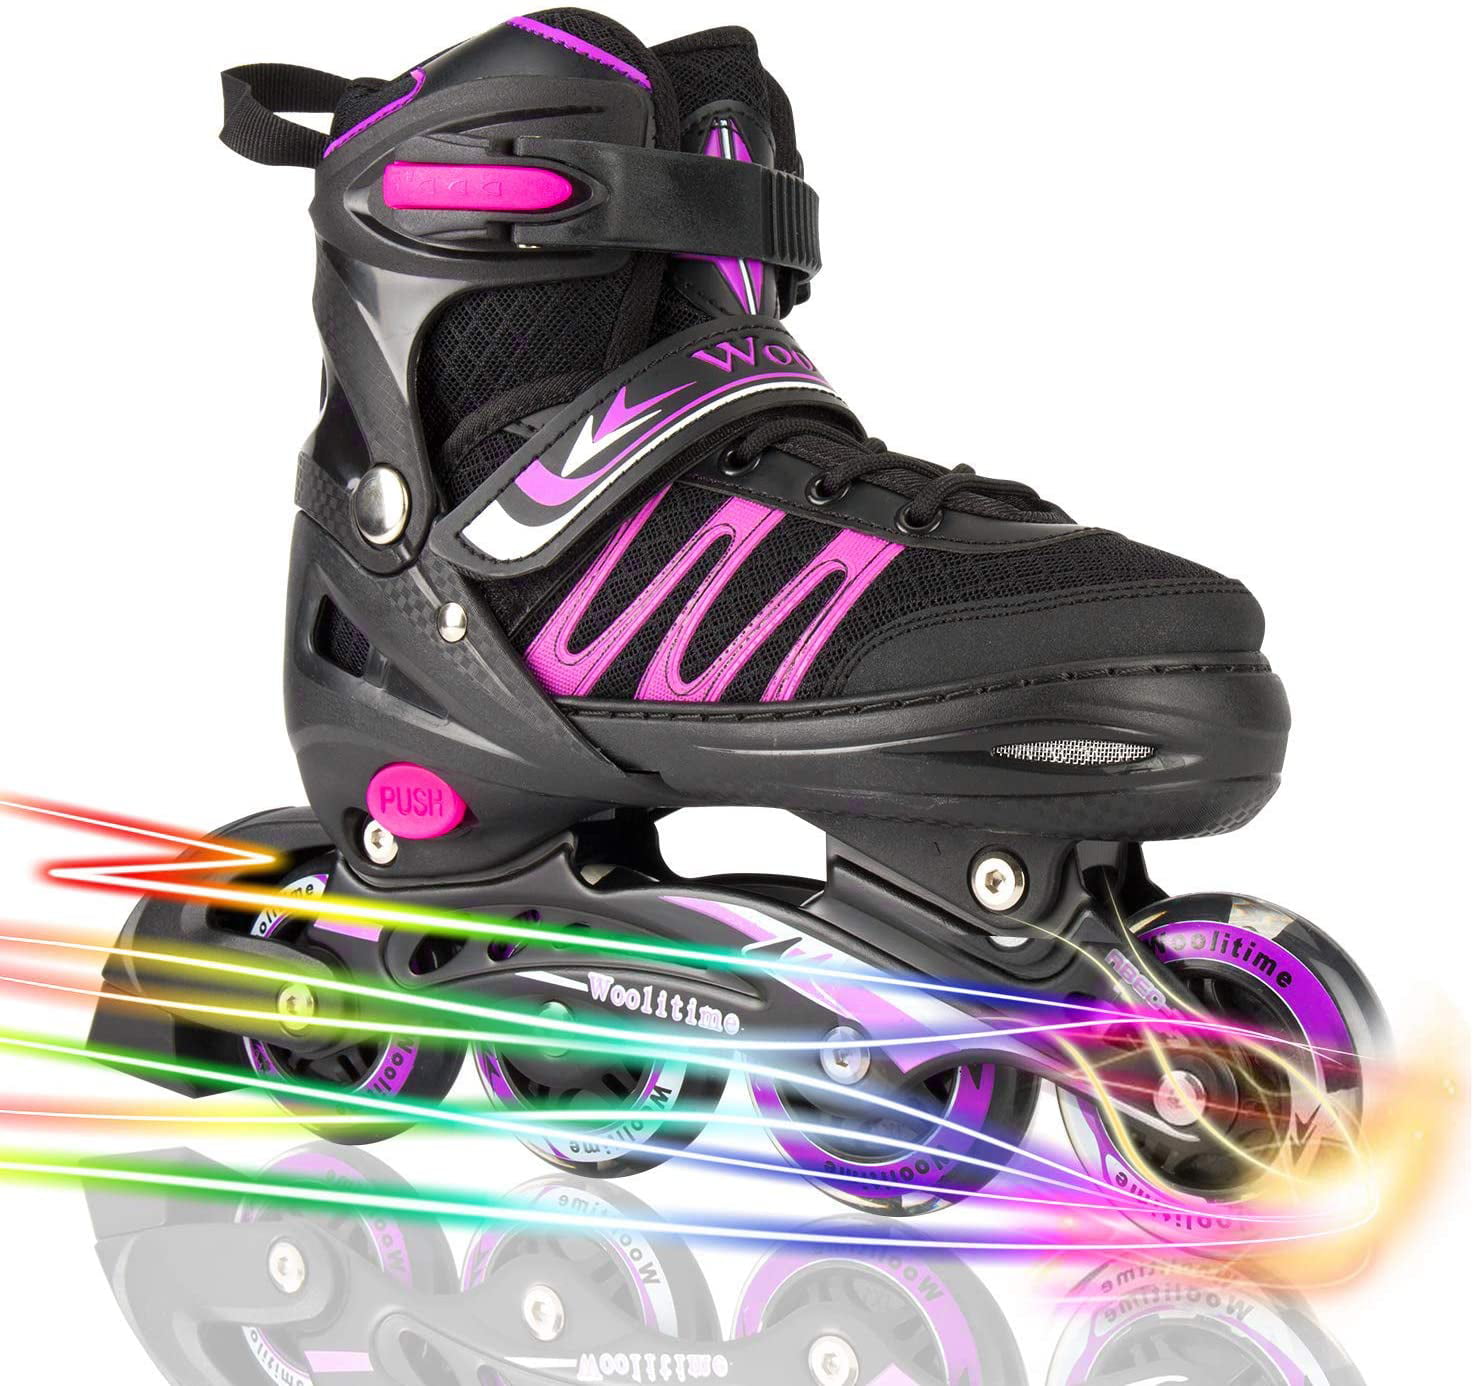 Woolitime Sports Adjustable Blades Roller Skates for Boys and Kids 